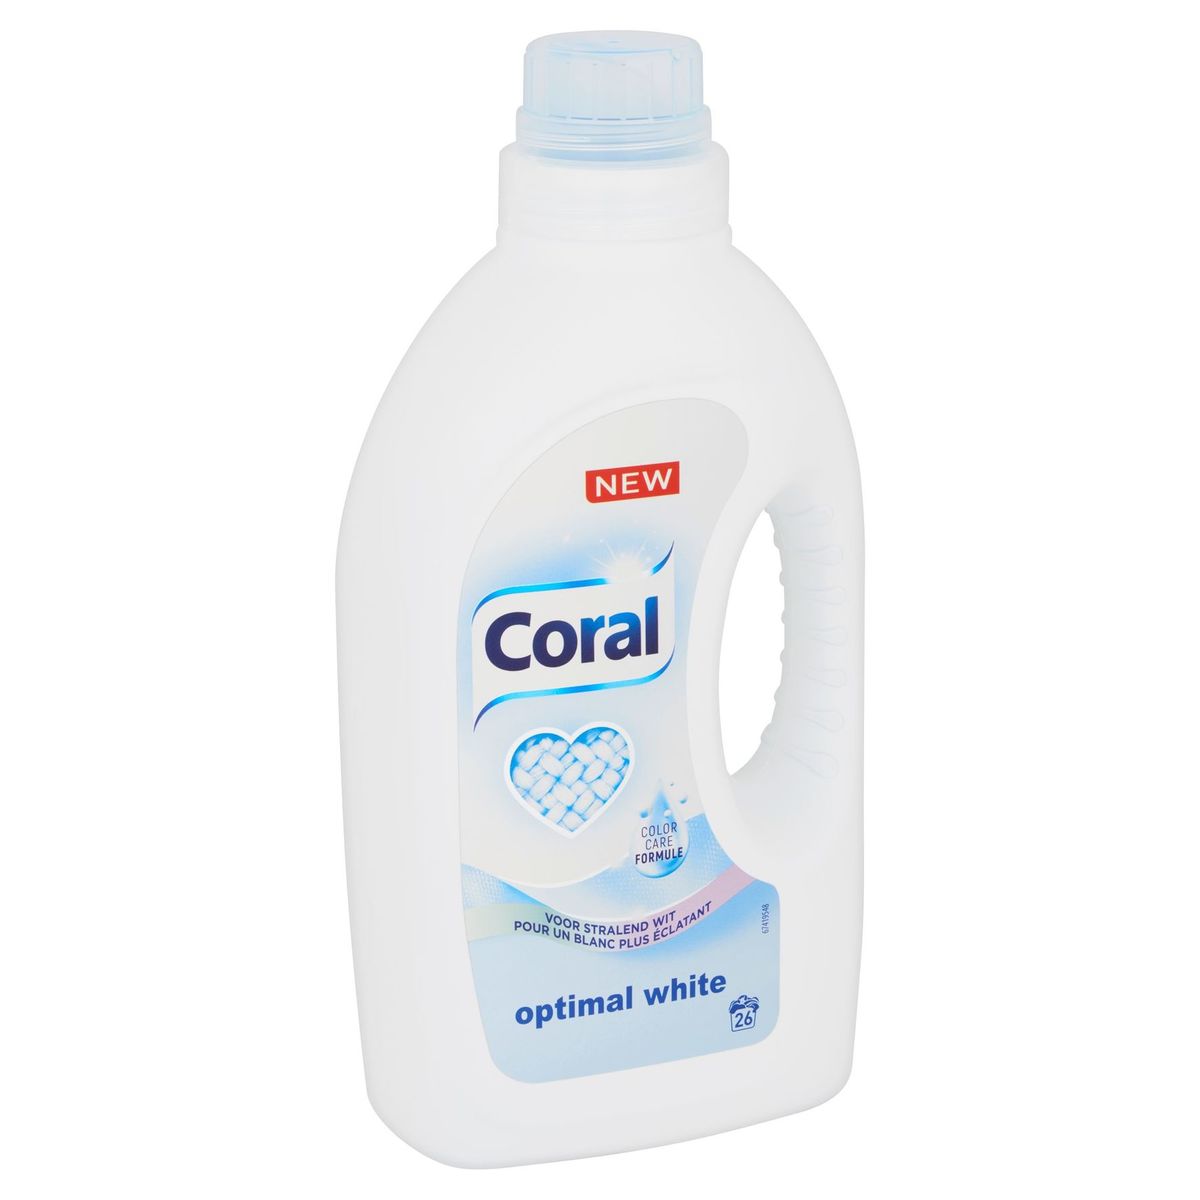 Coral Vloeibaar Wasmiddel Witte Was Optimal White 26 Wasbeurten